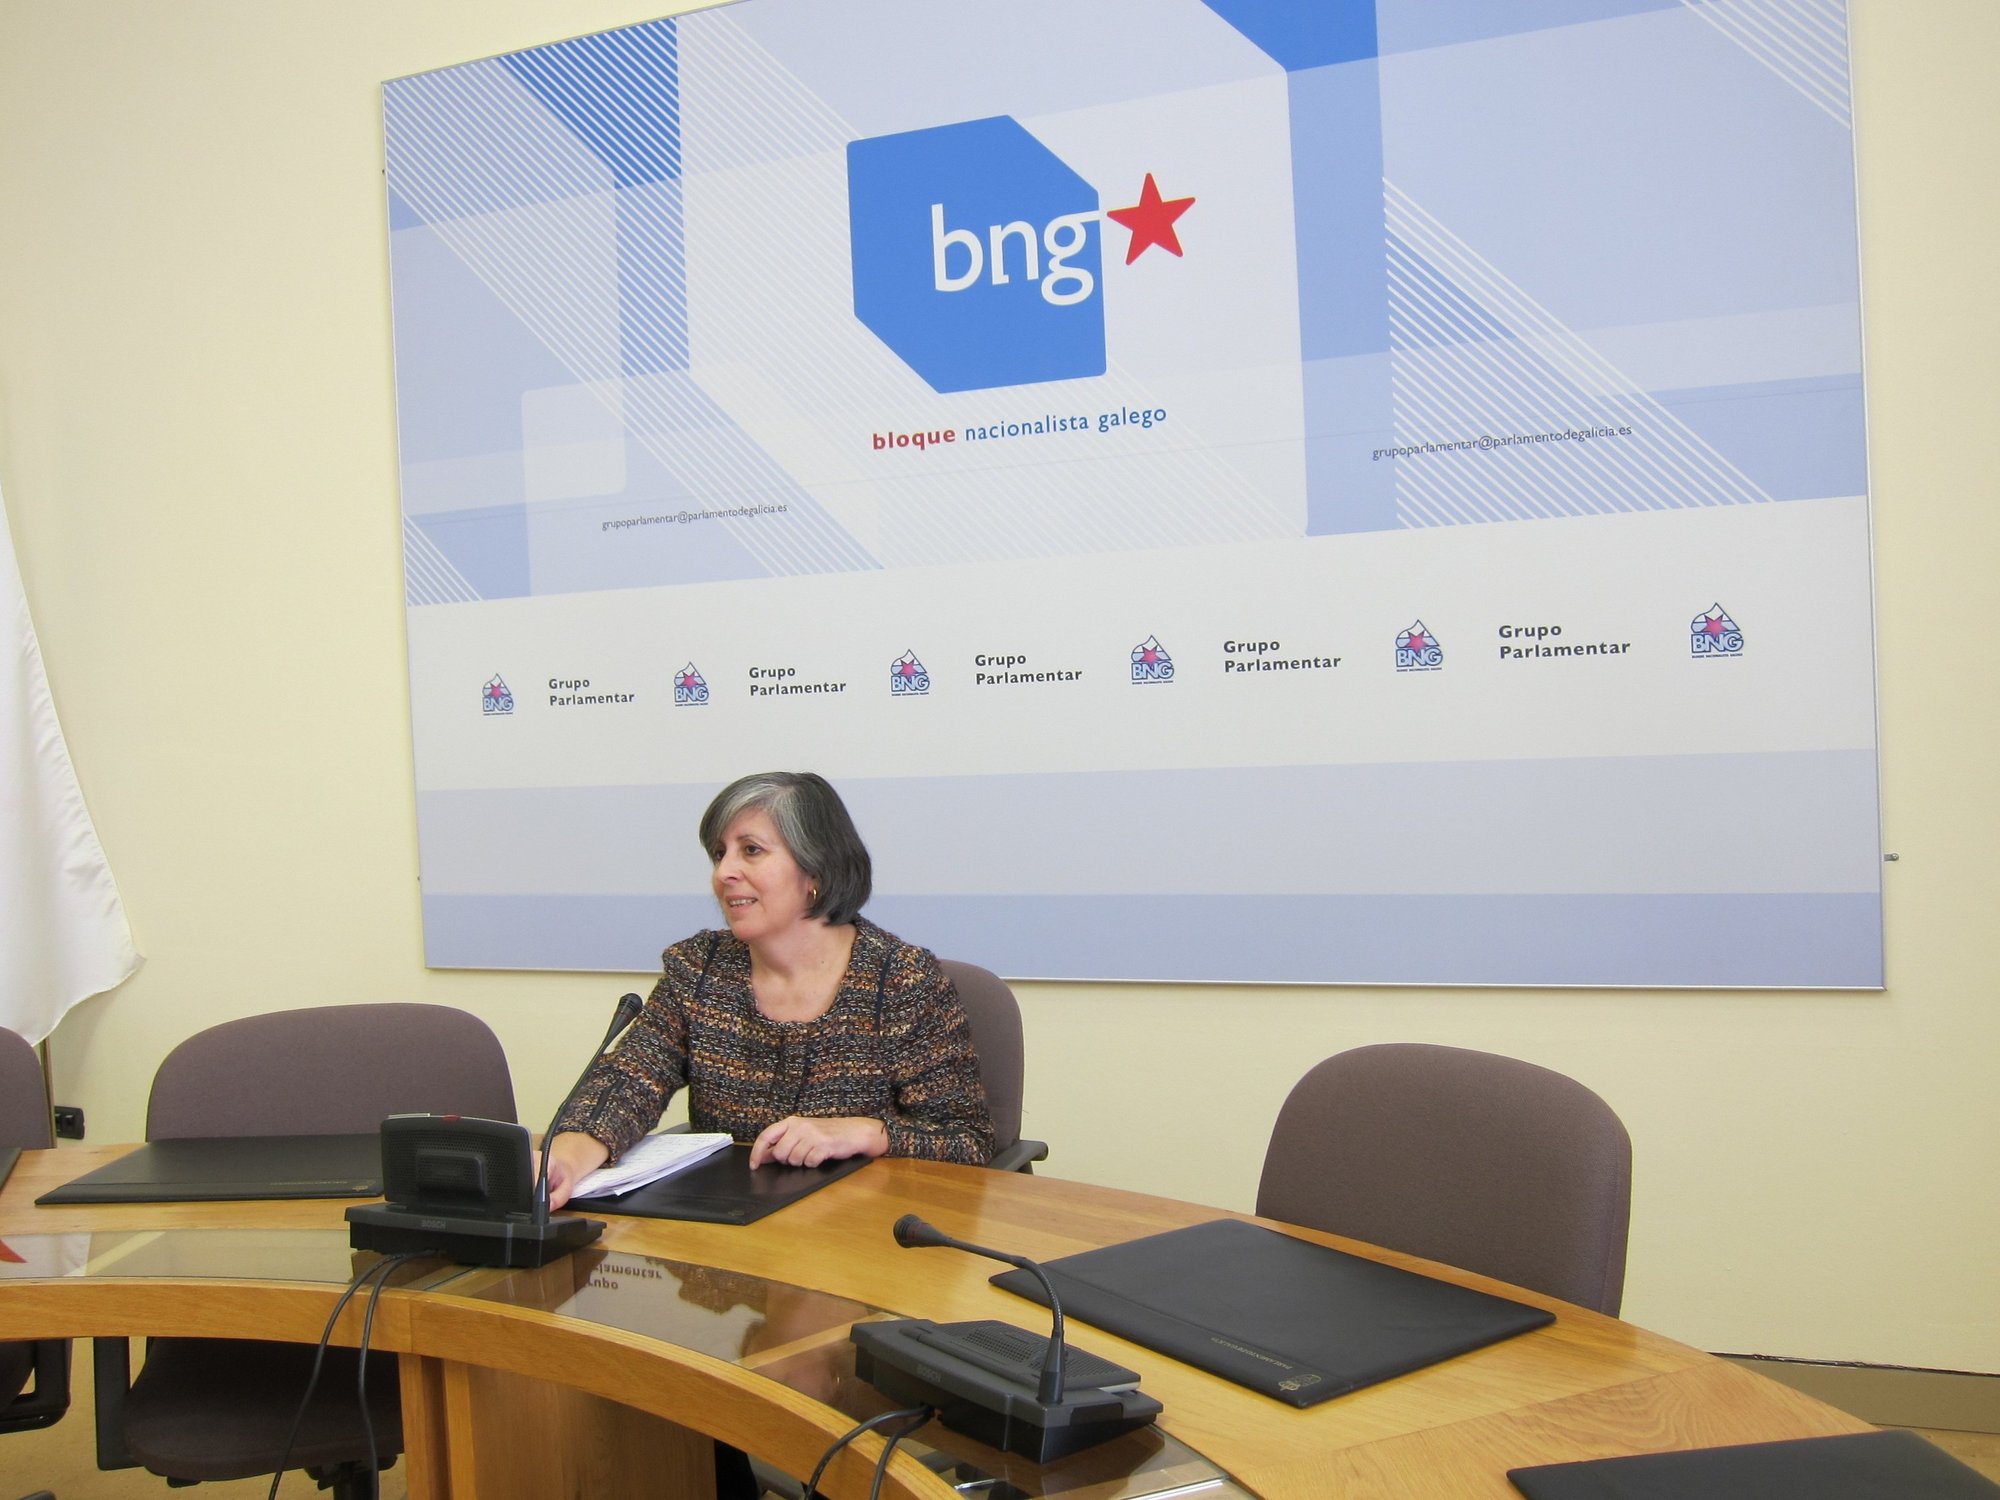 El BNG propone una nueva fiscalidad, derogar los ajustes a funcionarios y deberes para la reunión con Rajoy